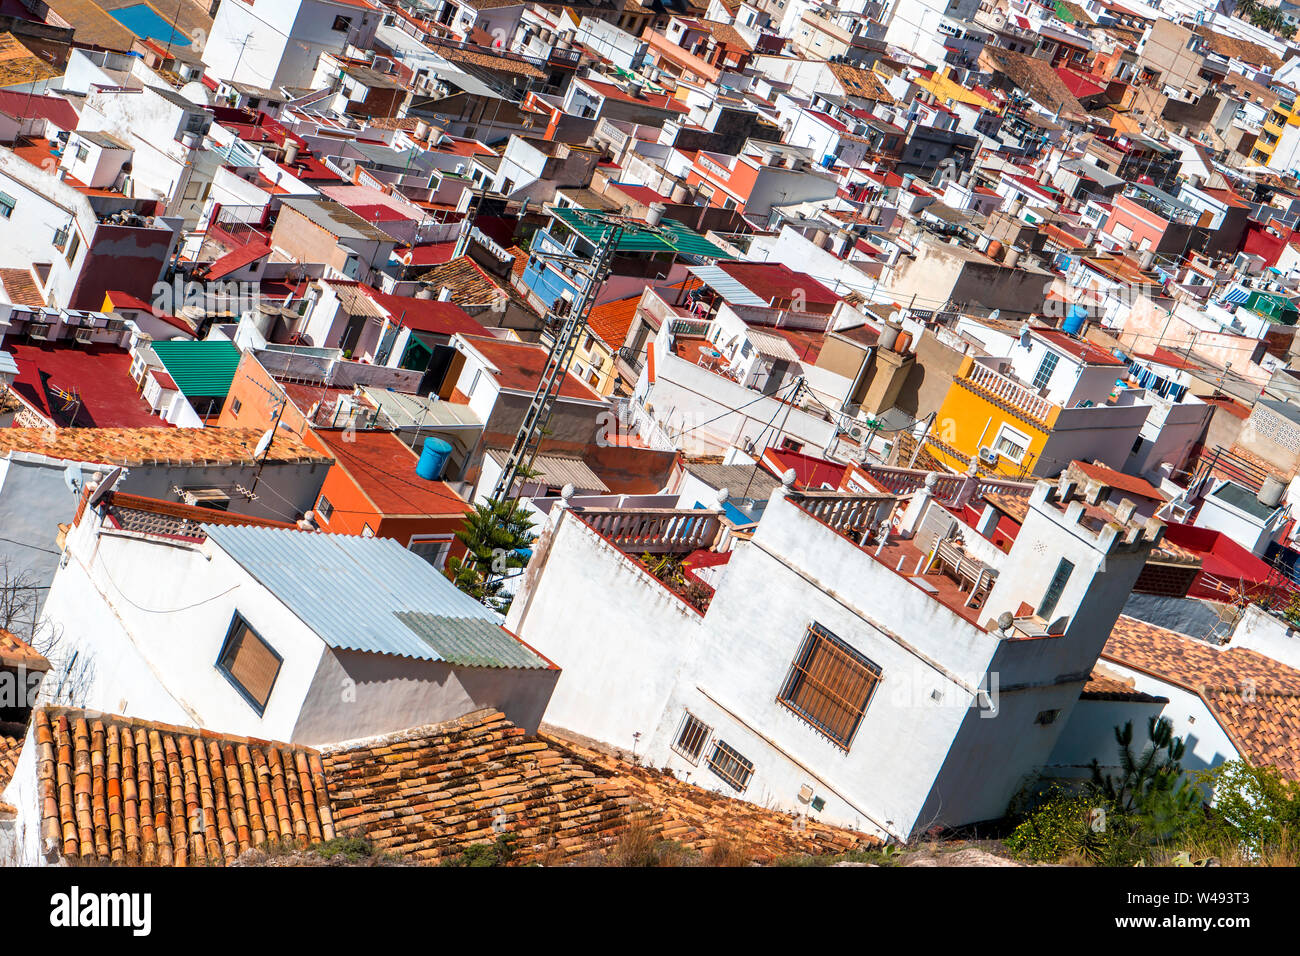 Vue de dessus de la lumineuse couleur multi-toits de maisons individuelles. Petite ville - Cullera, Espagne, Avril2019 Banque D'Images